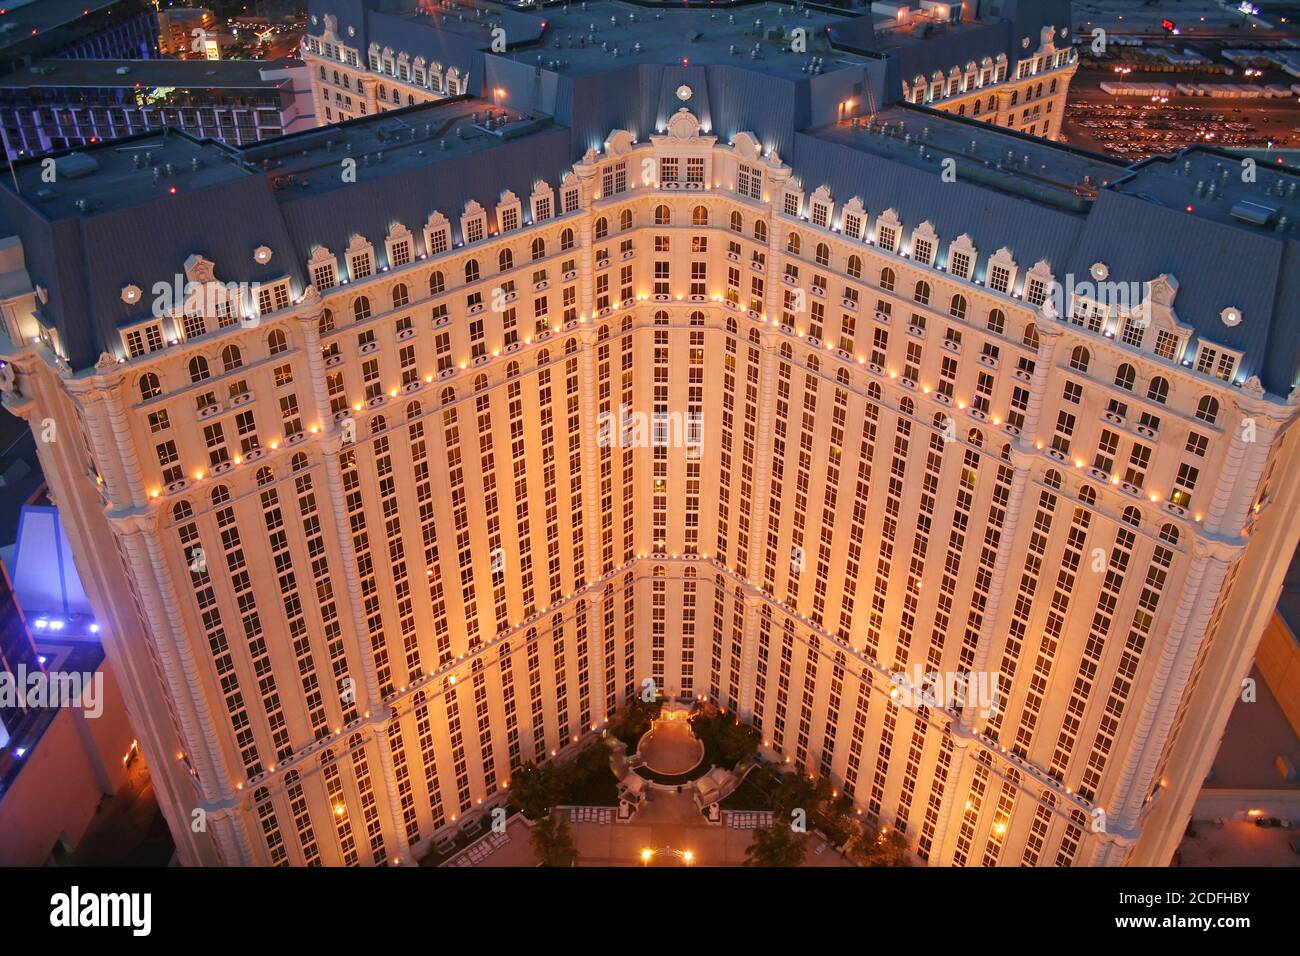 Paris Hotel Casino, Las Vegas, Nevada Stock Photo